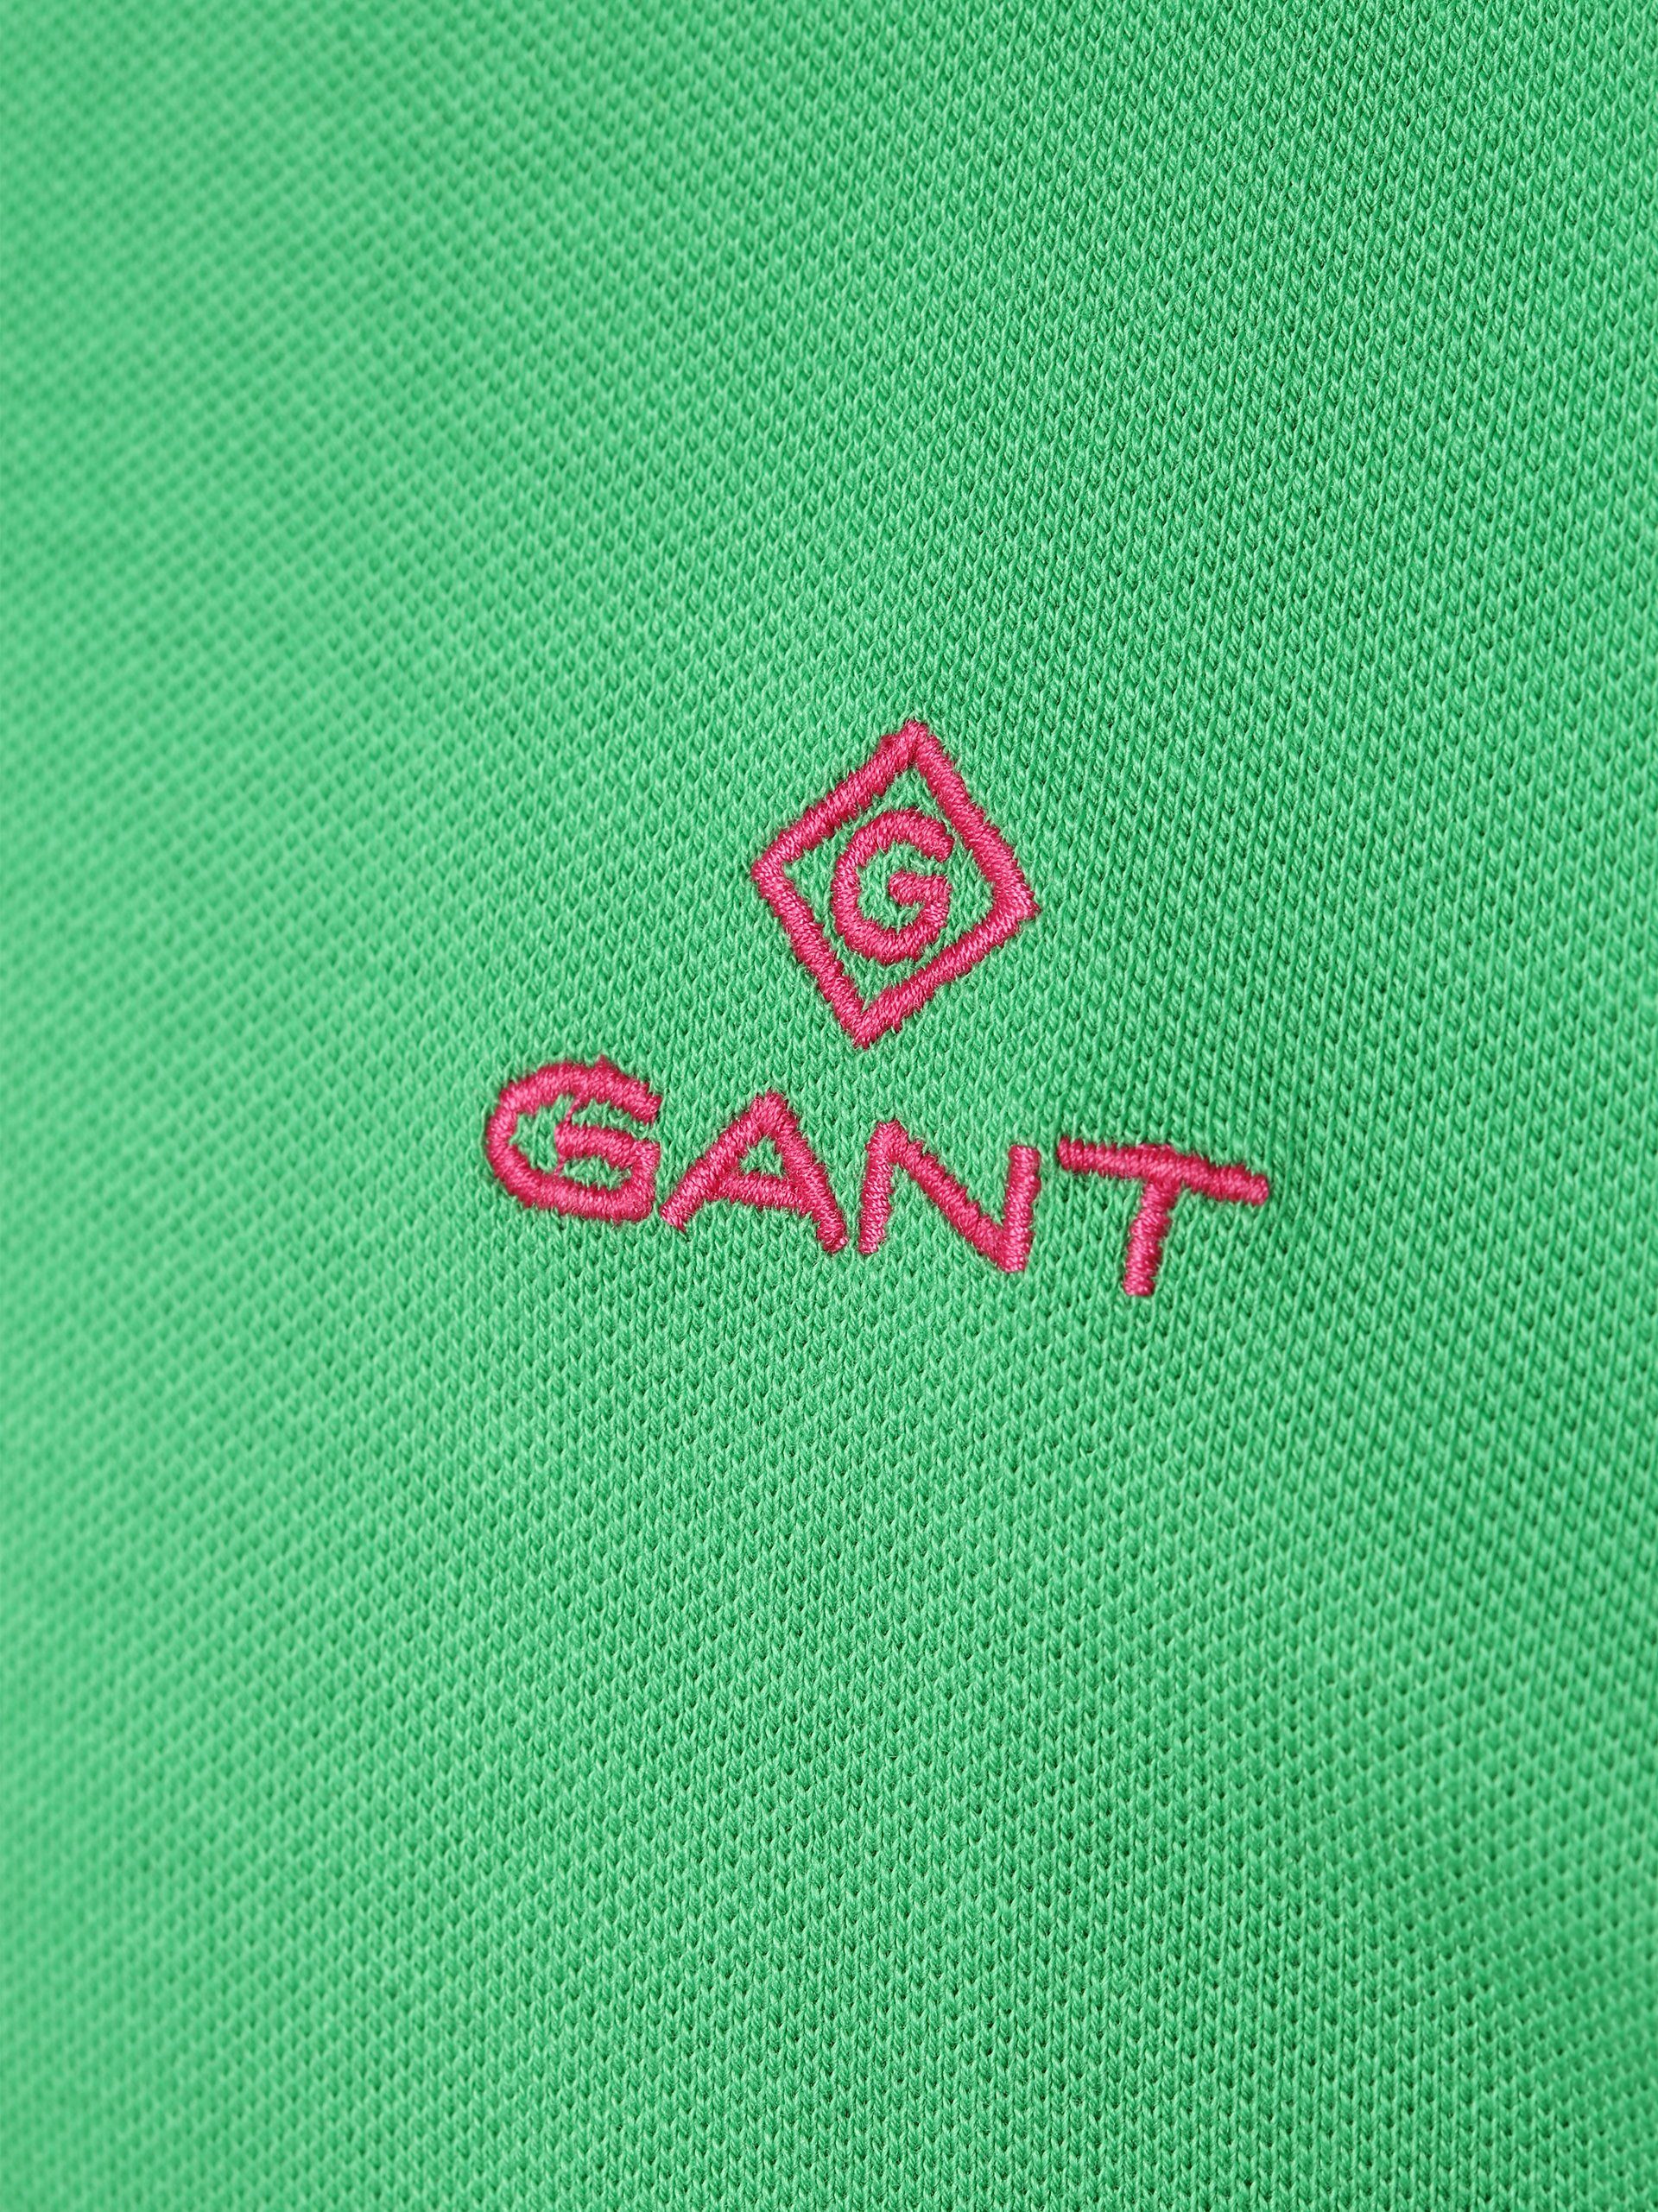 Gant Poloshirt grün